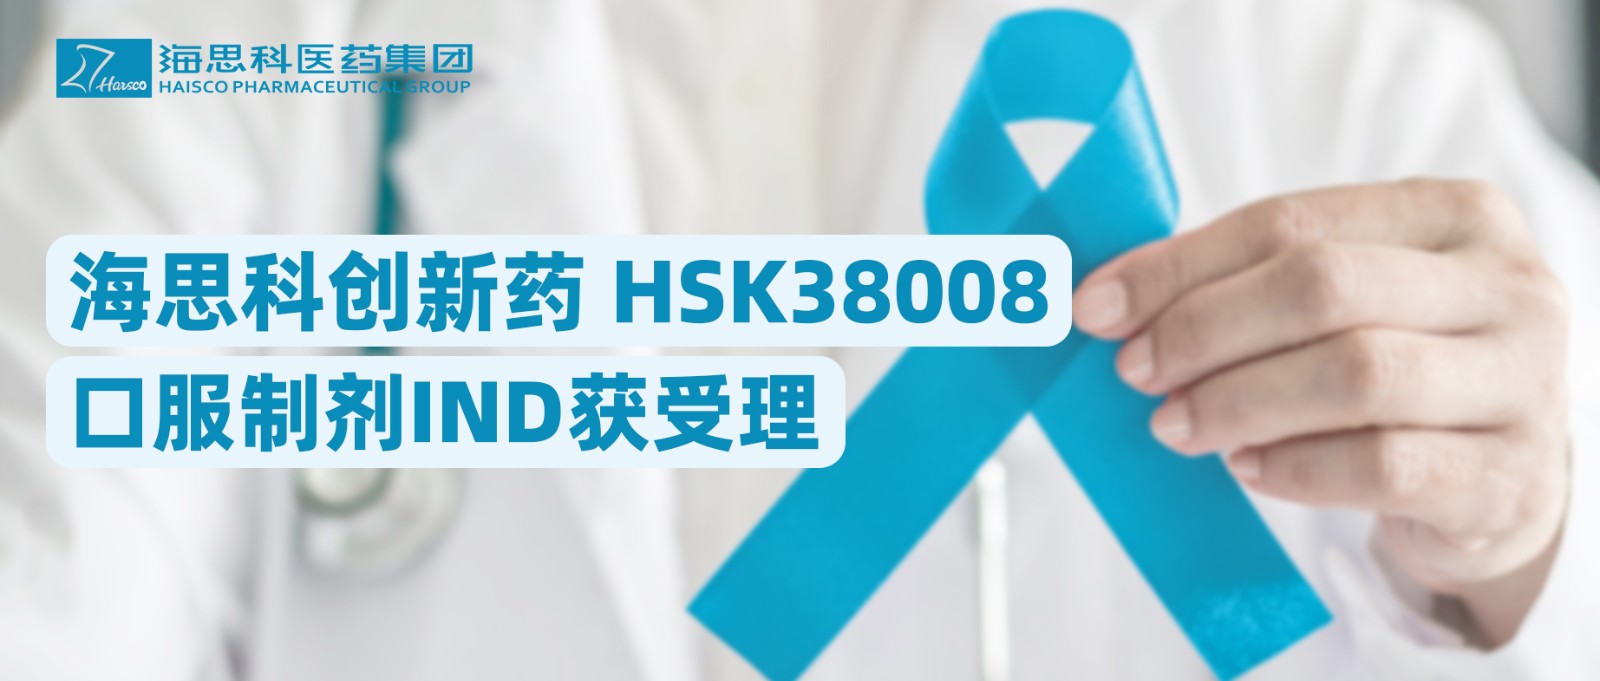 云顶国际官网创新药HSK38008口服制剂IND获受理